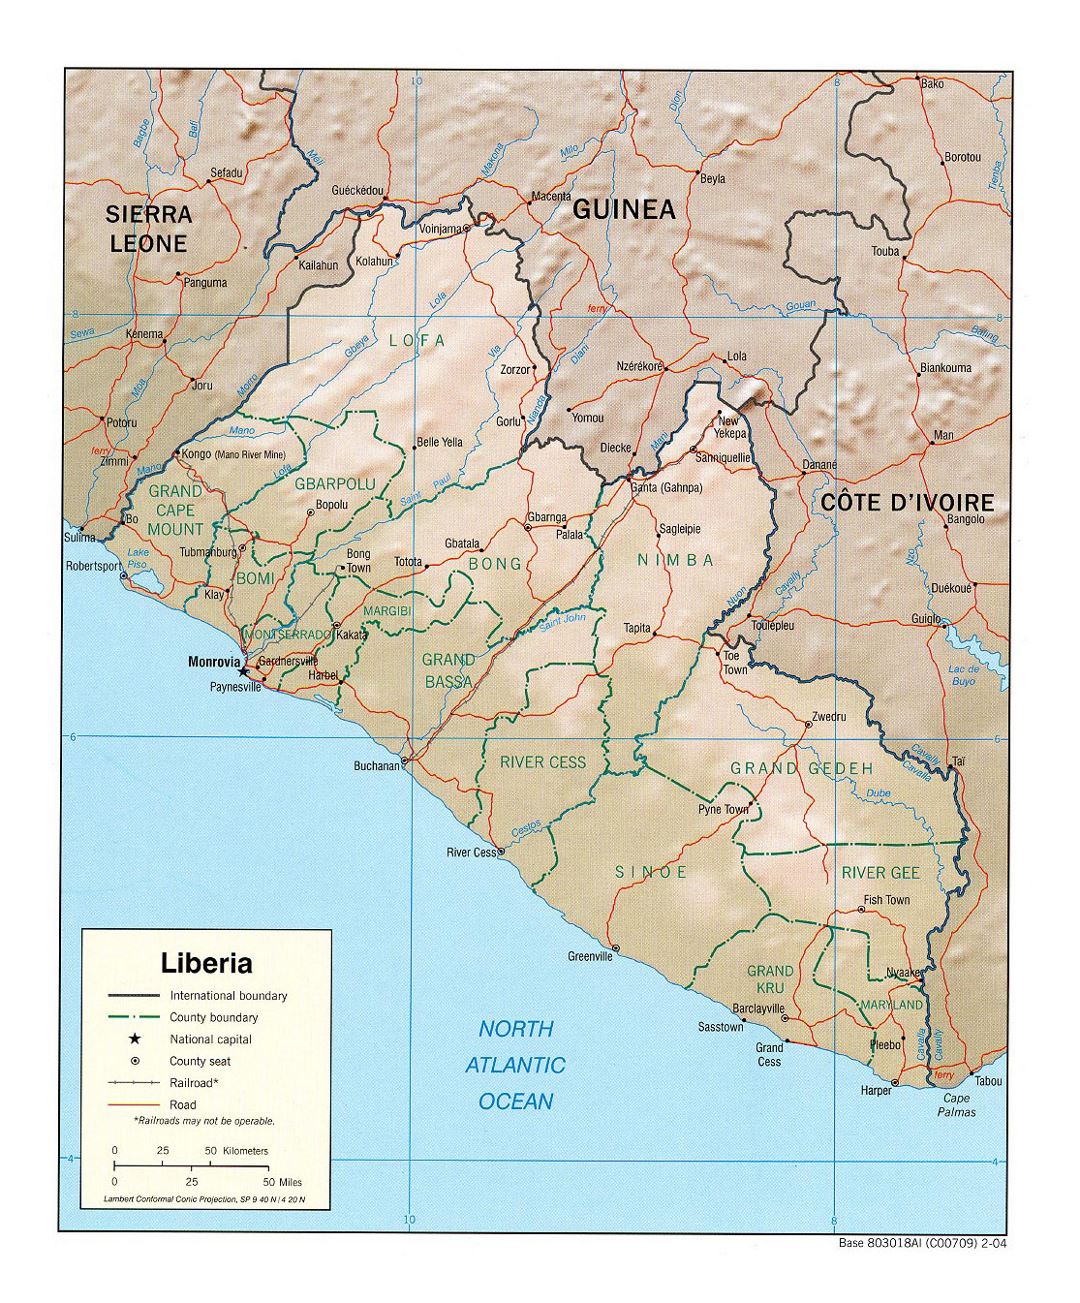 Детальная политическая и административная карта Либерии с рельефом, дорогами, железными дорогами и крупными городами - 2004